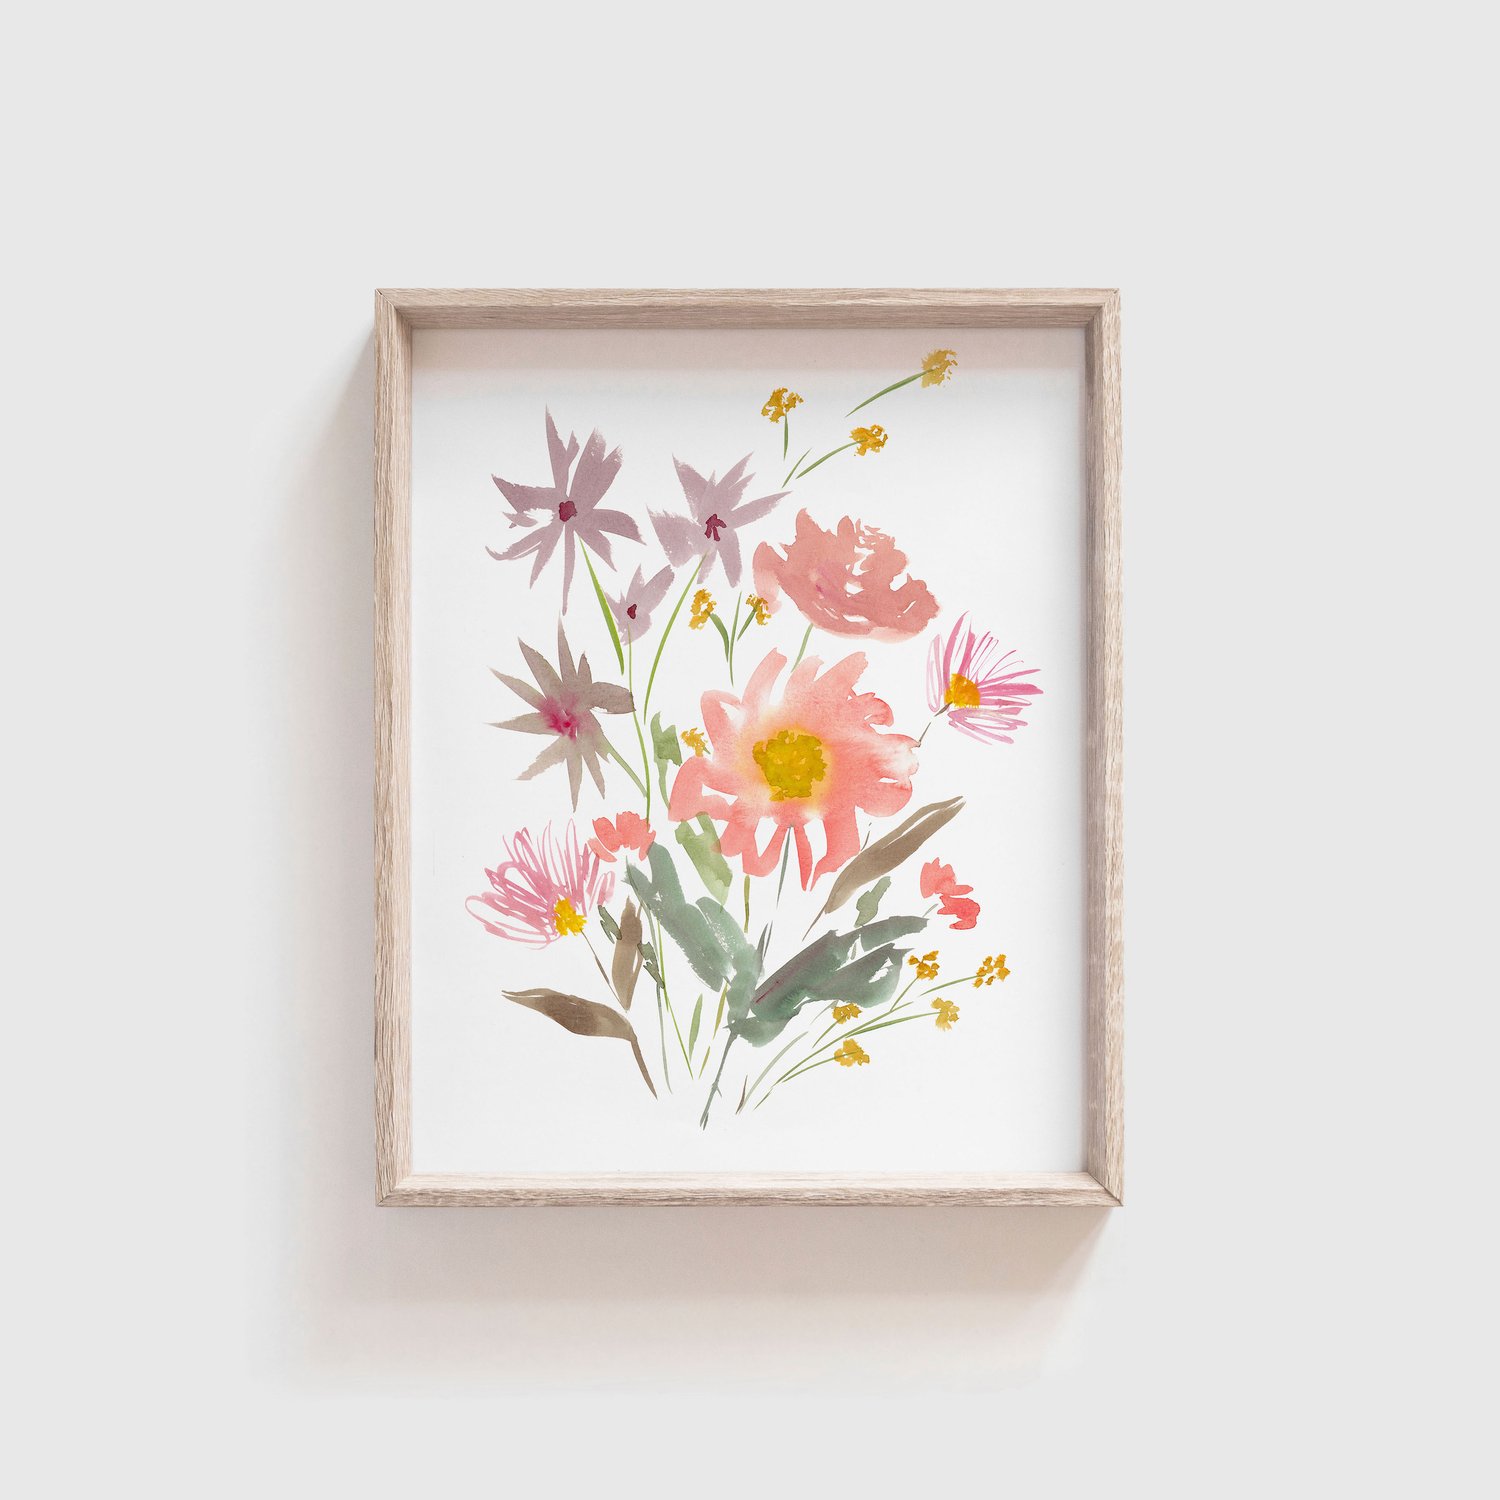 Pressed flowers, dried flowers, wildflowers, floral wall art Art